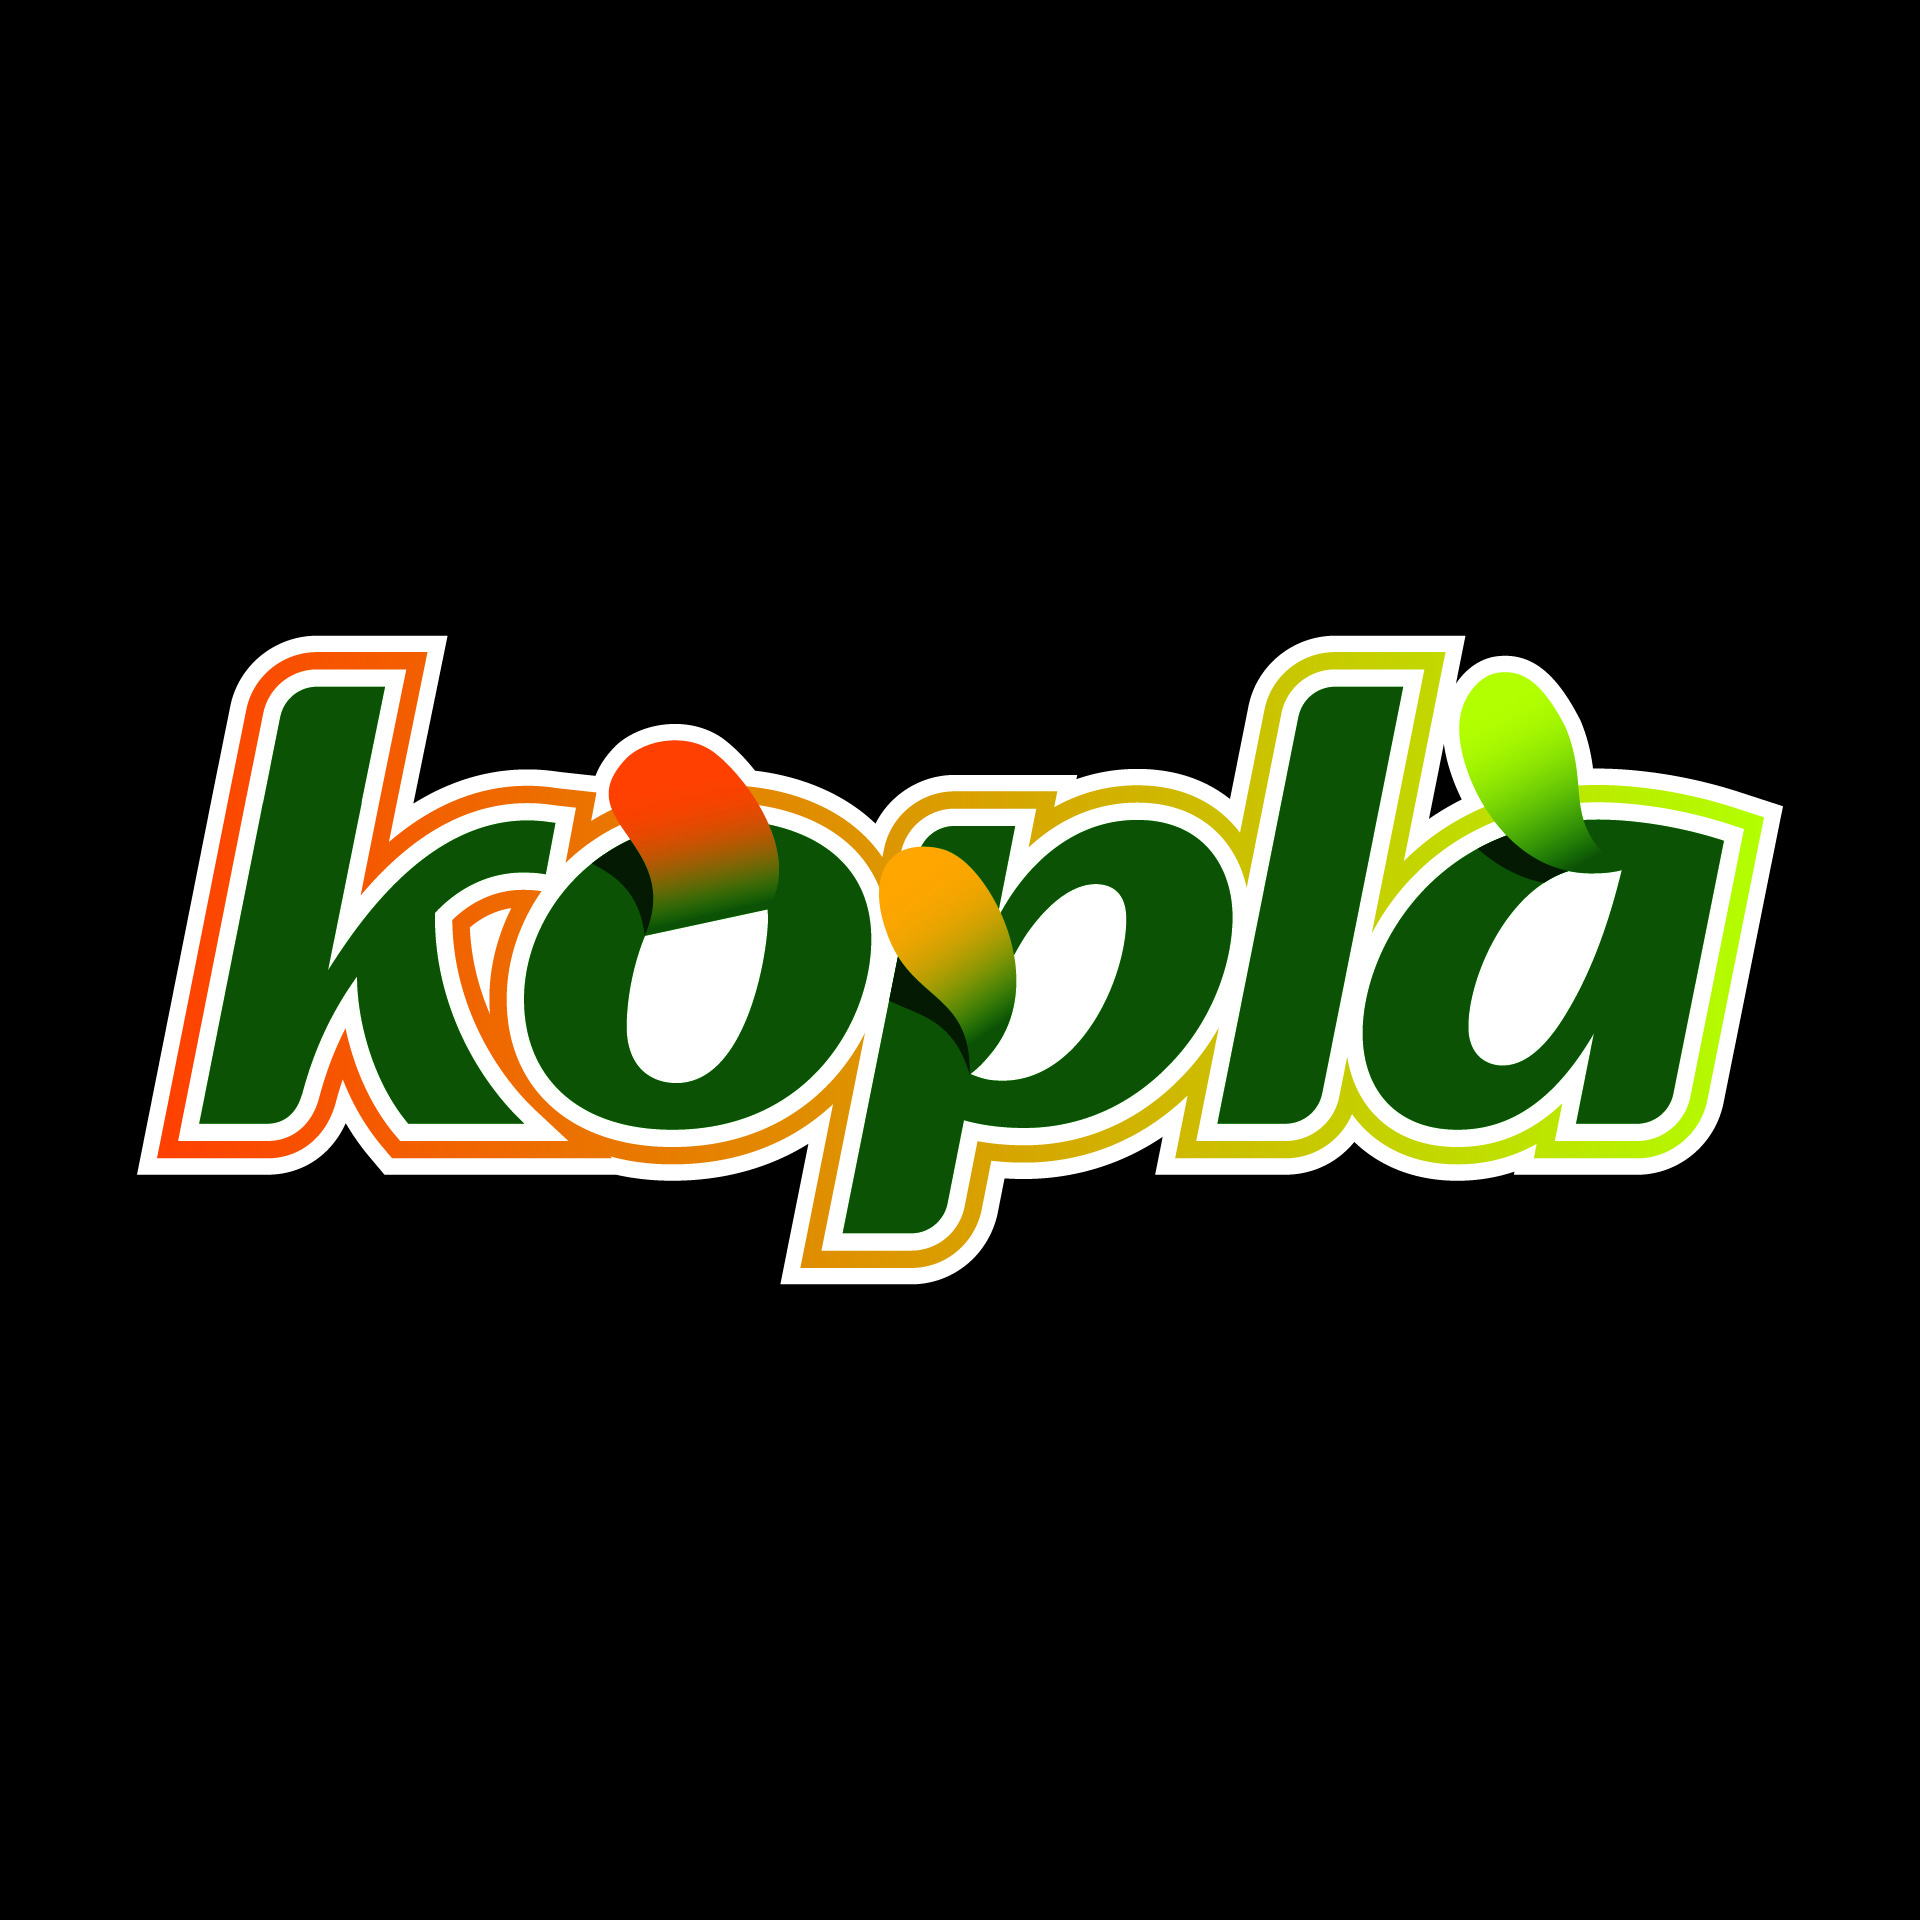 Diseño de Identidad Visual y Logotipo para la marca Kopla